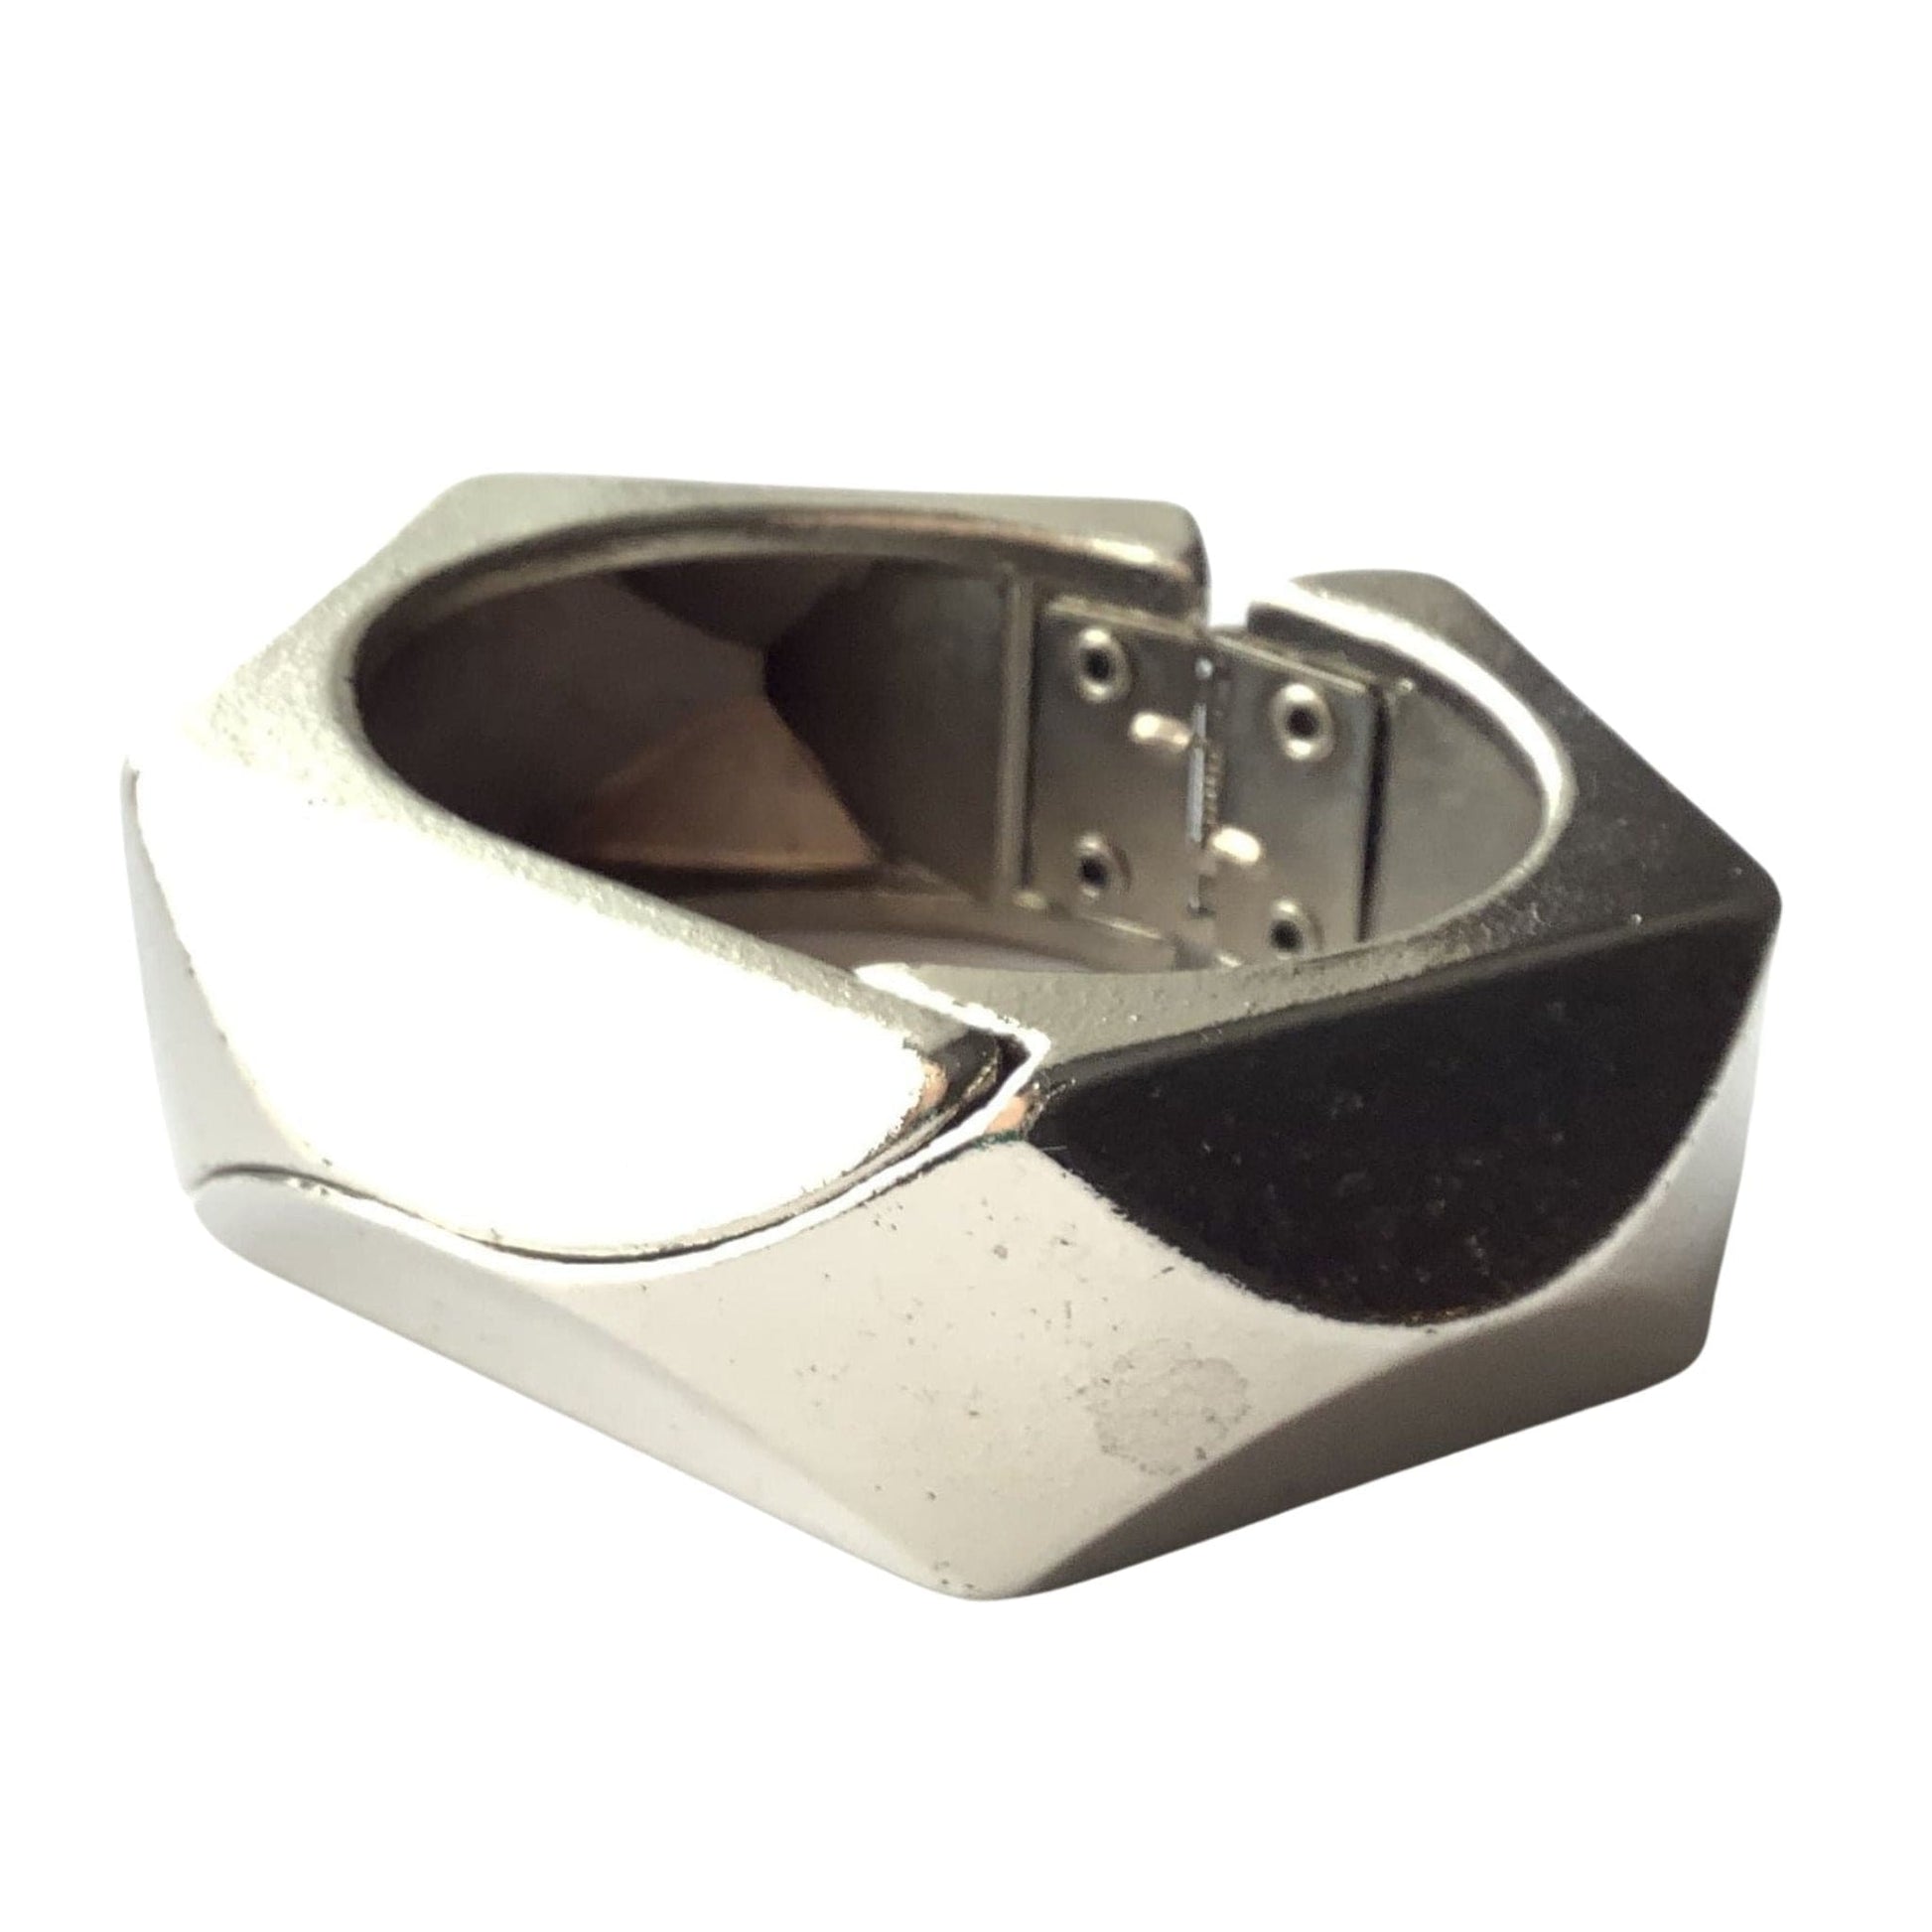 Cubist Cuff Bracelet Silver / Metal / Mod